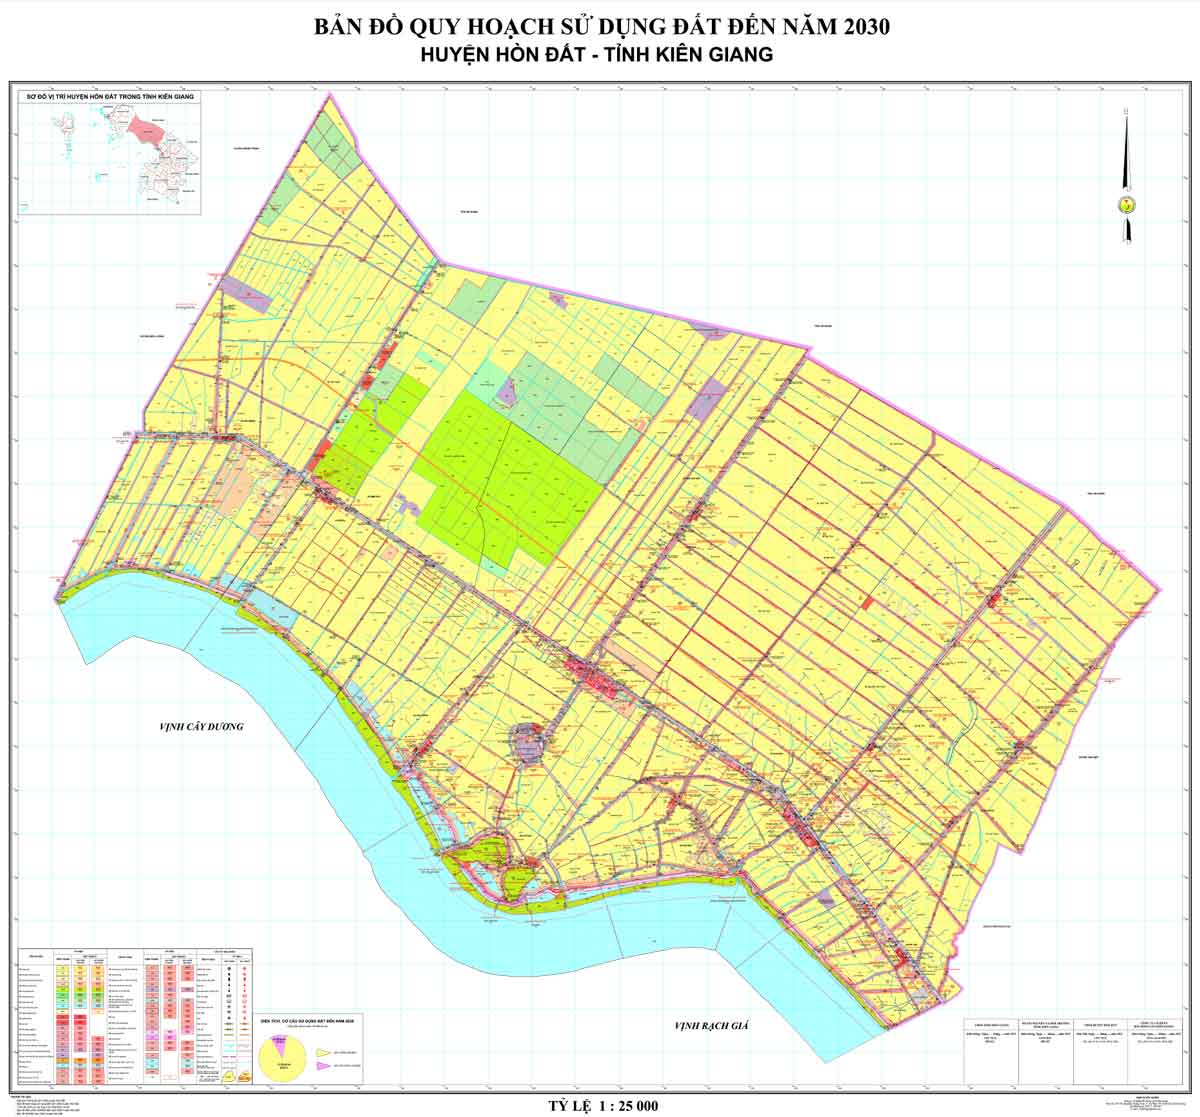 Bản đồ QHSDĐ huyện Hòn Đất đến năm 2030